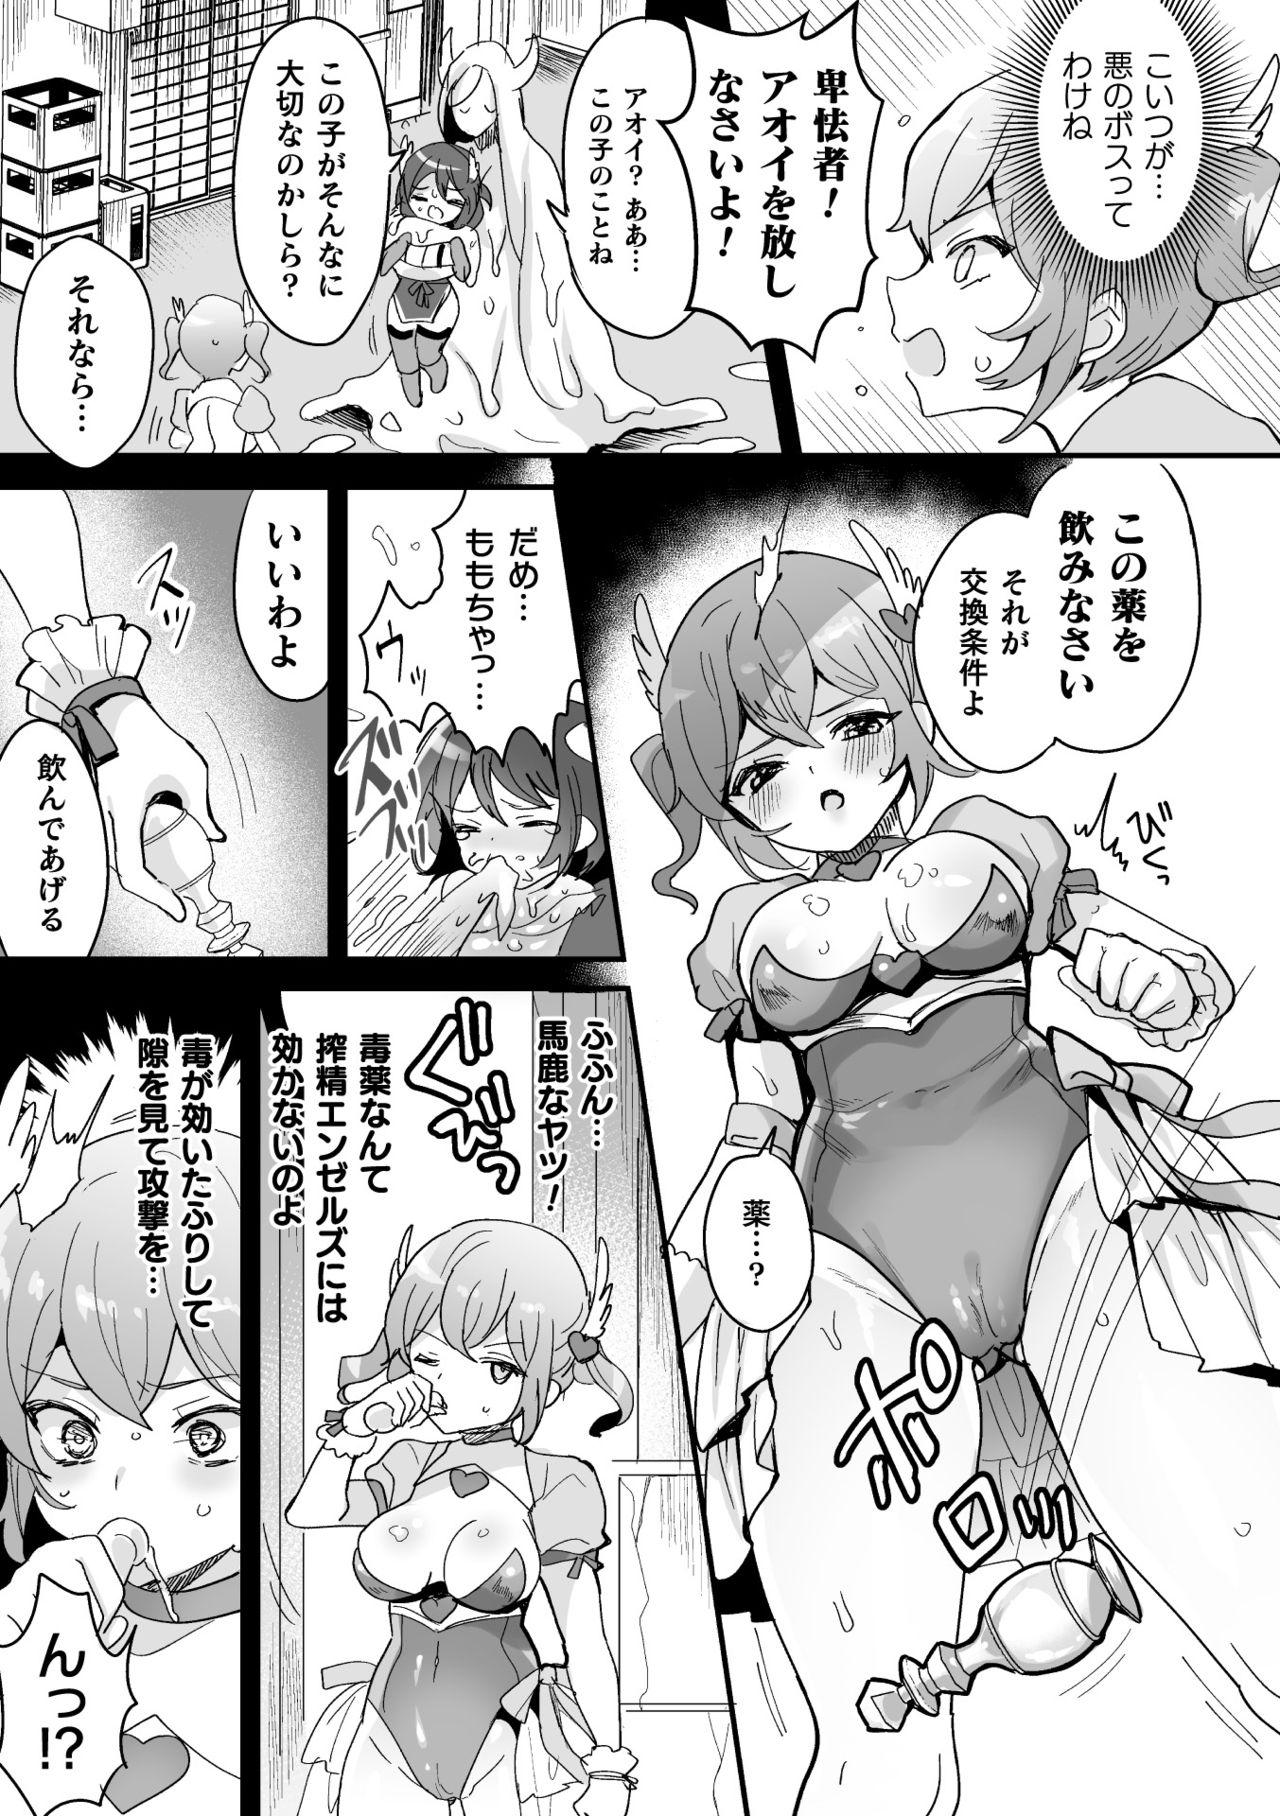 Glory Hole 2D Comic Magazine - Futanari Mesugaki Sakusei Namaiki Zako Mesu Sao o Wakarase Shibori! Vol. 2 Messy - Page 9